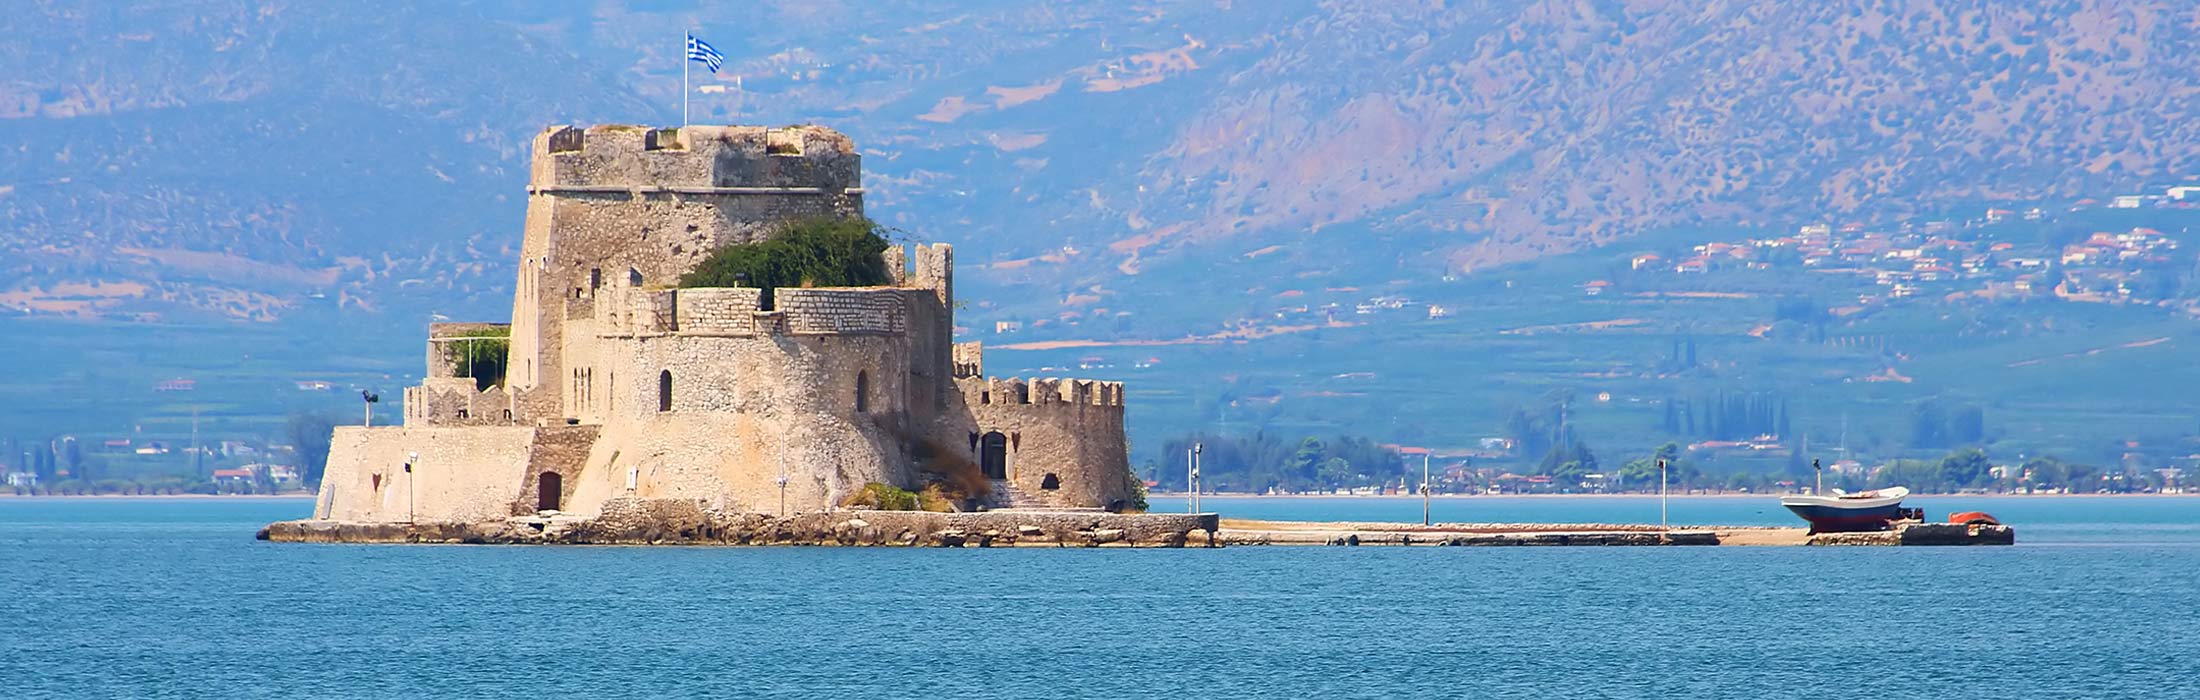 top yacht charter destinations mediterranean greece saronic gulf nafplio main slider 1